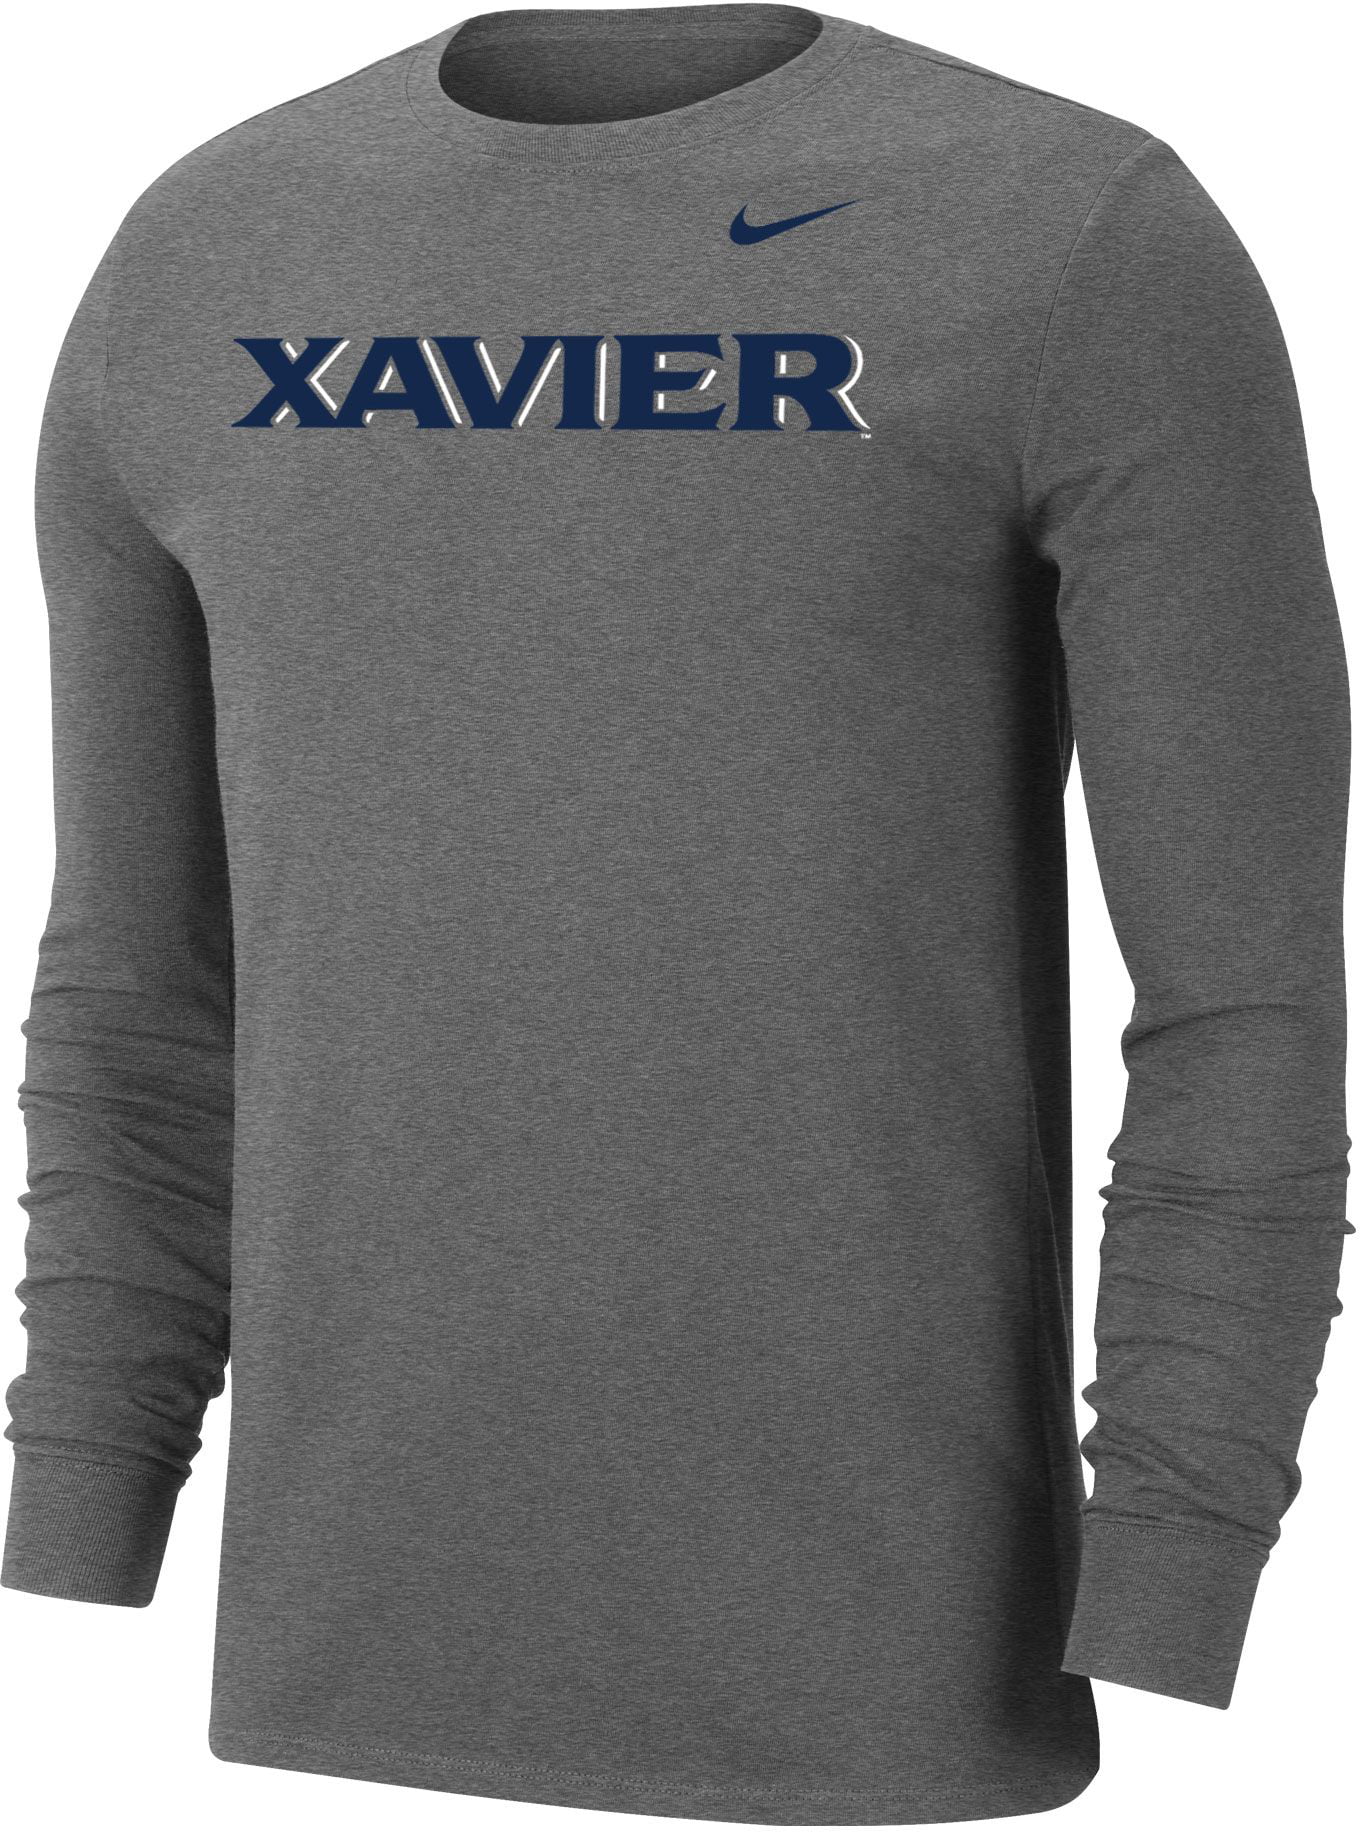 Nike - Nike Men's Xavier Musketeers Grey Wordmark Long Sleeve T-Shirt ...